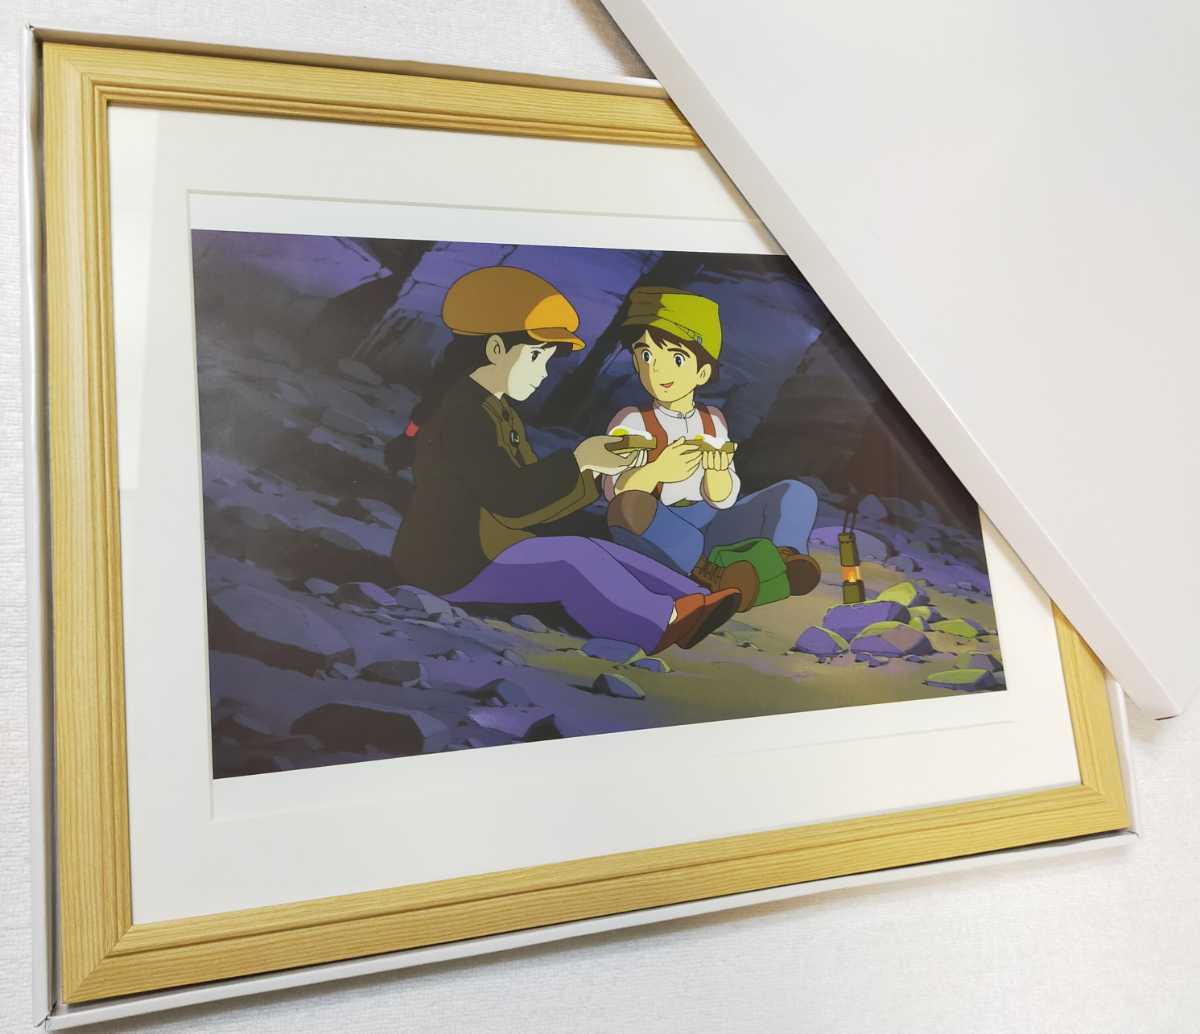 Super rare! Studio Ghibli Château dans le ciel [Article encadré] Affiche murale à suspendre, reproduction de peinture, carte postale d'art originale, calendrier Ghibli. Hayao Miyazaki Thêta, des bandes dessinées, produits d'anime, autres